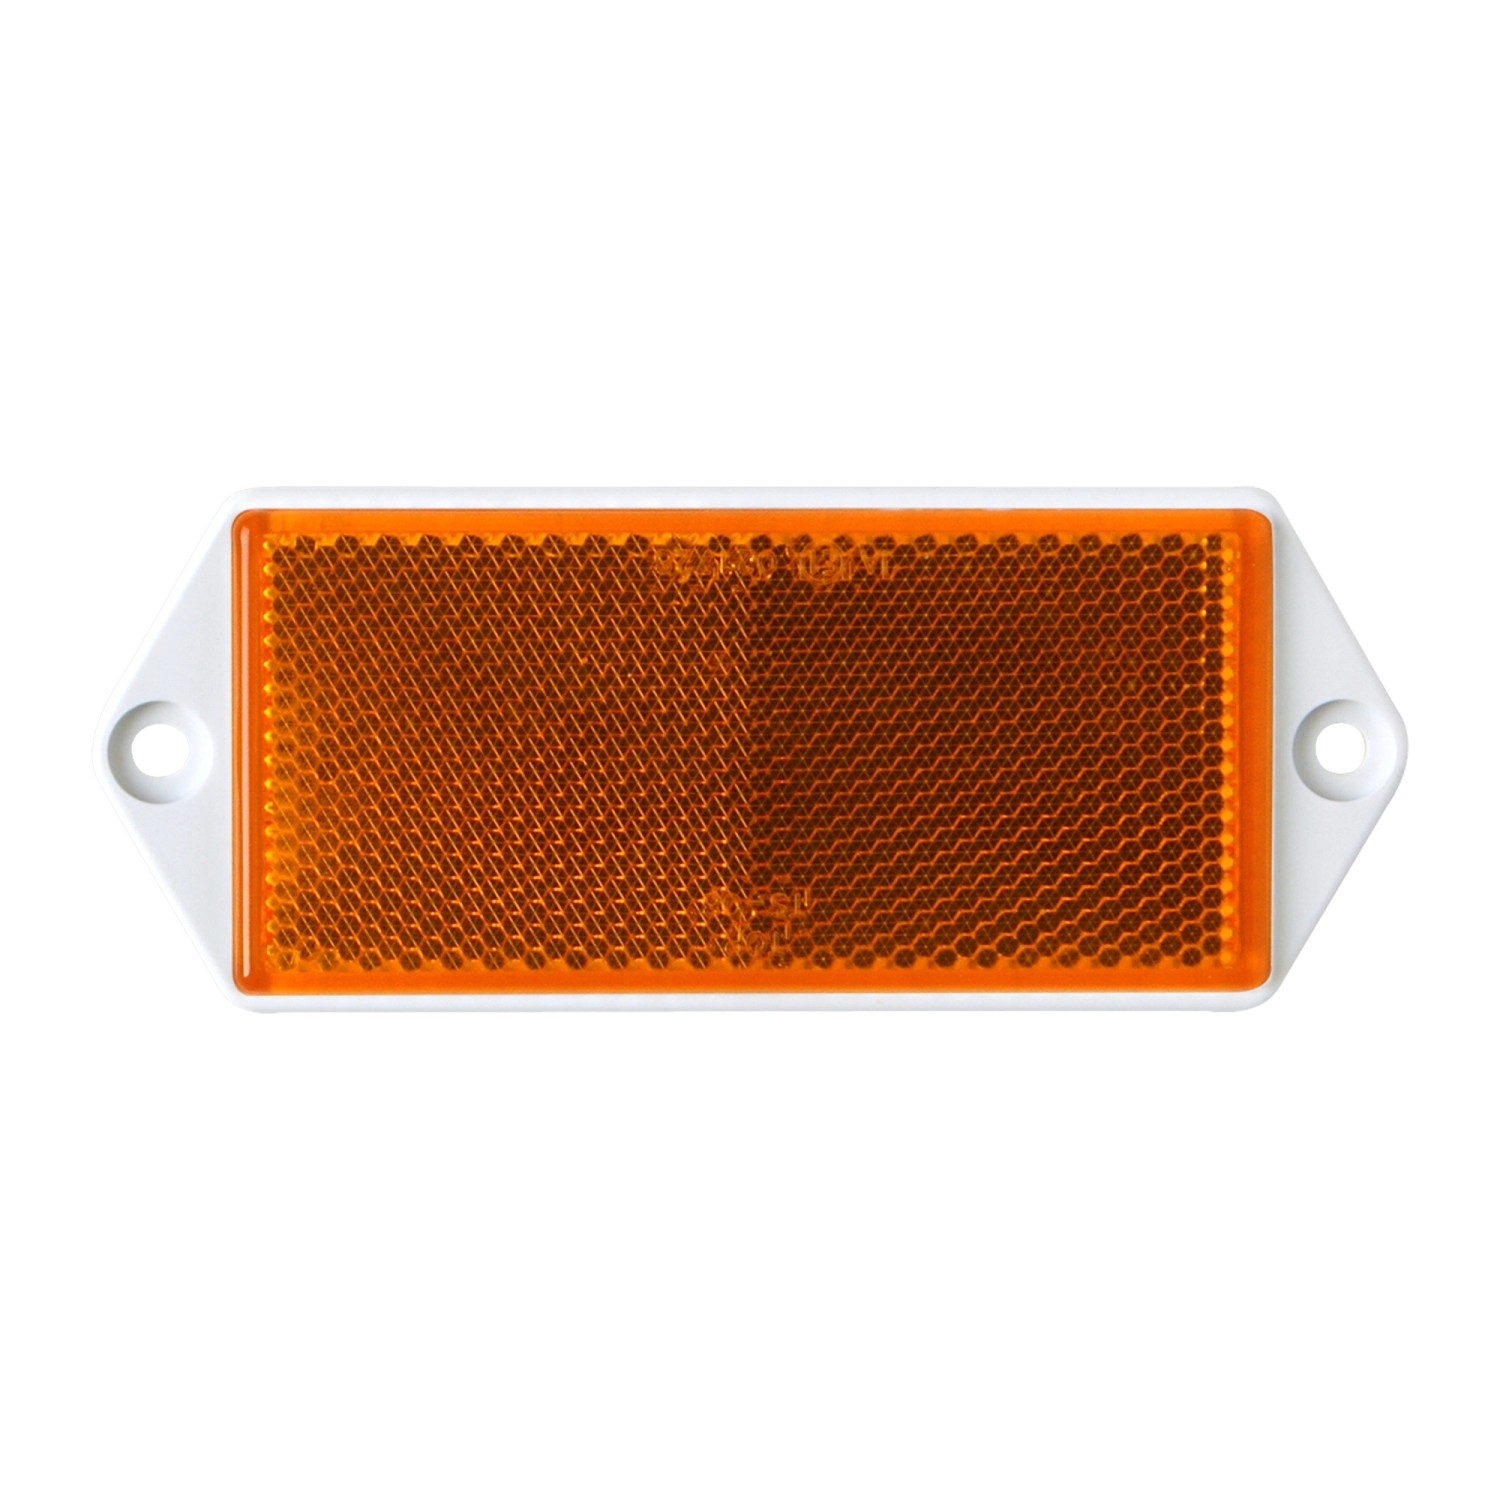 LAS Eckiger Reflektor für PKW Anhänger 2 Stück Orange kaufen bei OBI